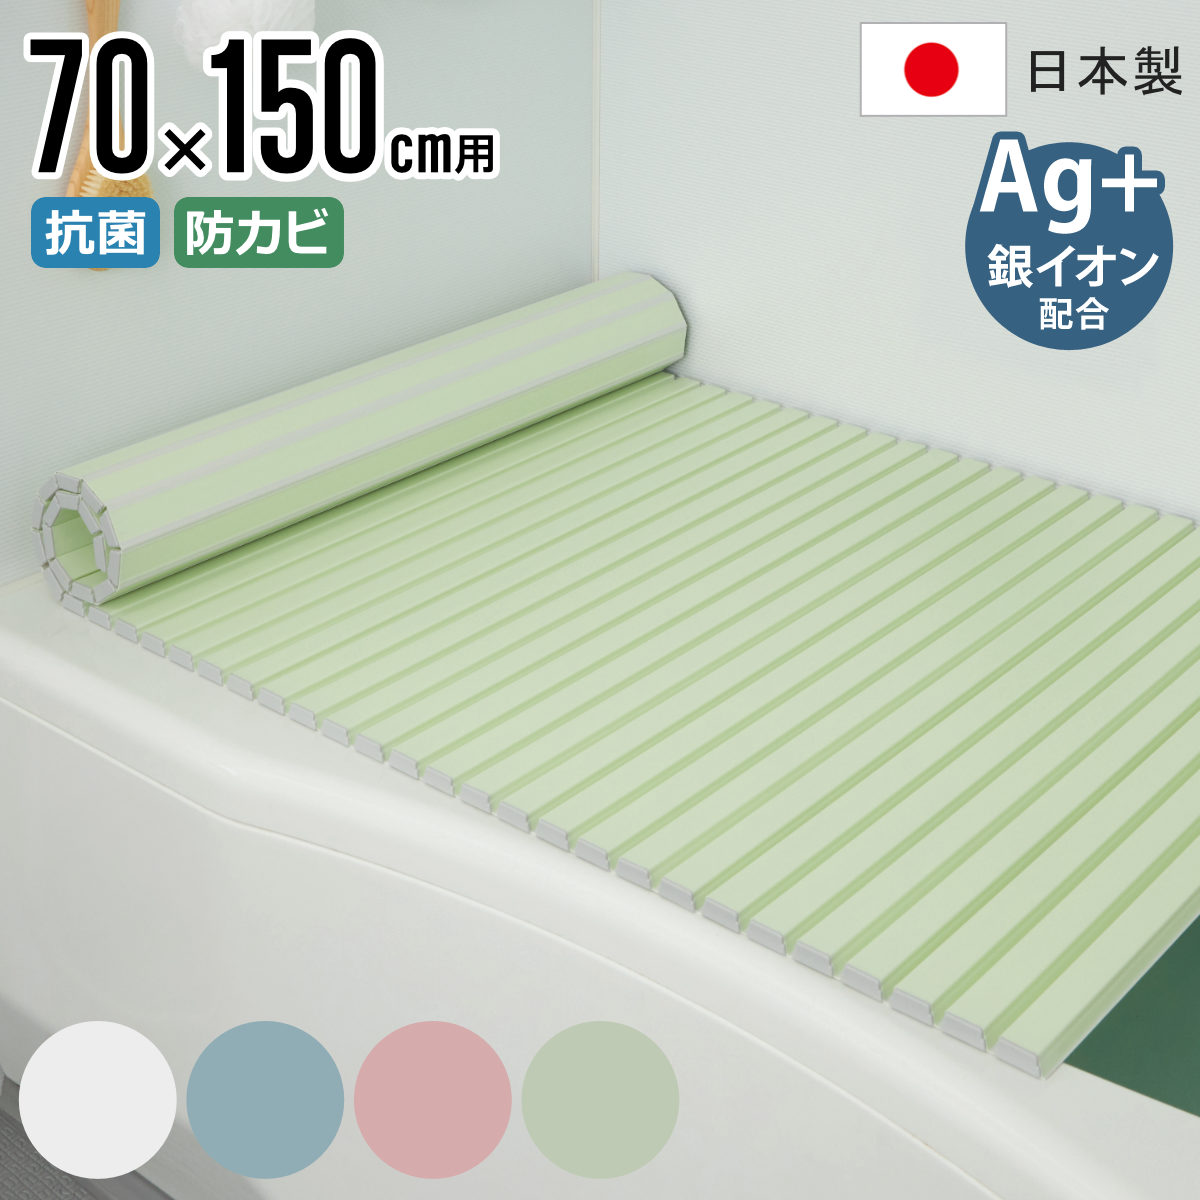 風呂ふた シャッター Ag抗菌 日本製 70×150cm 用 M-15 実寸70×152cm （ 風呂蓋 風呂フタ 風呂 ふた シャッタータイプ シャッター風呂ふ